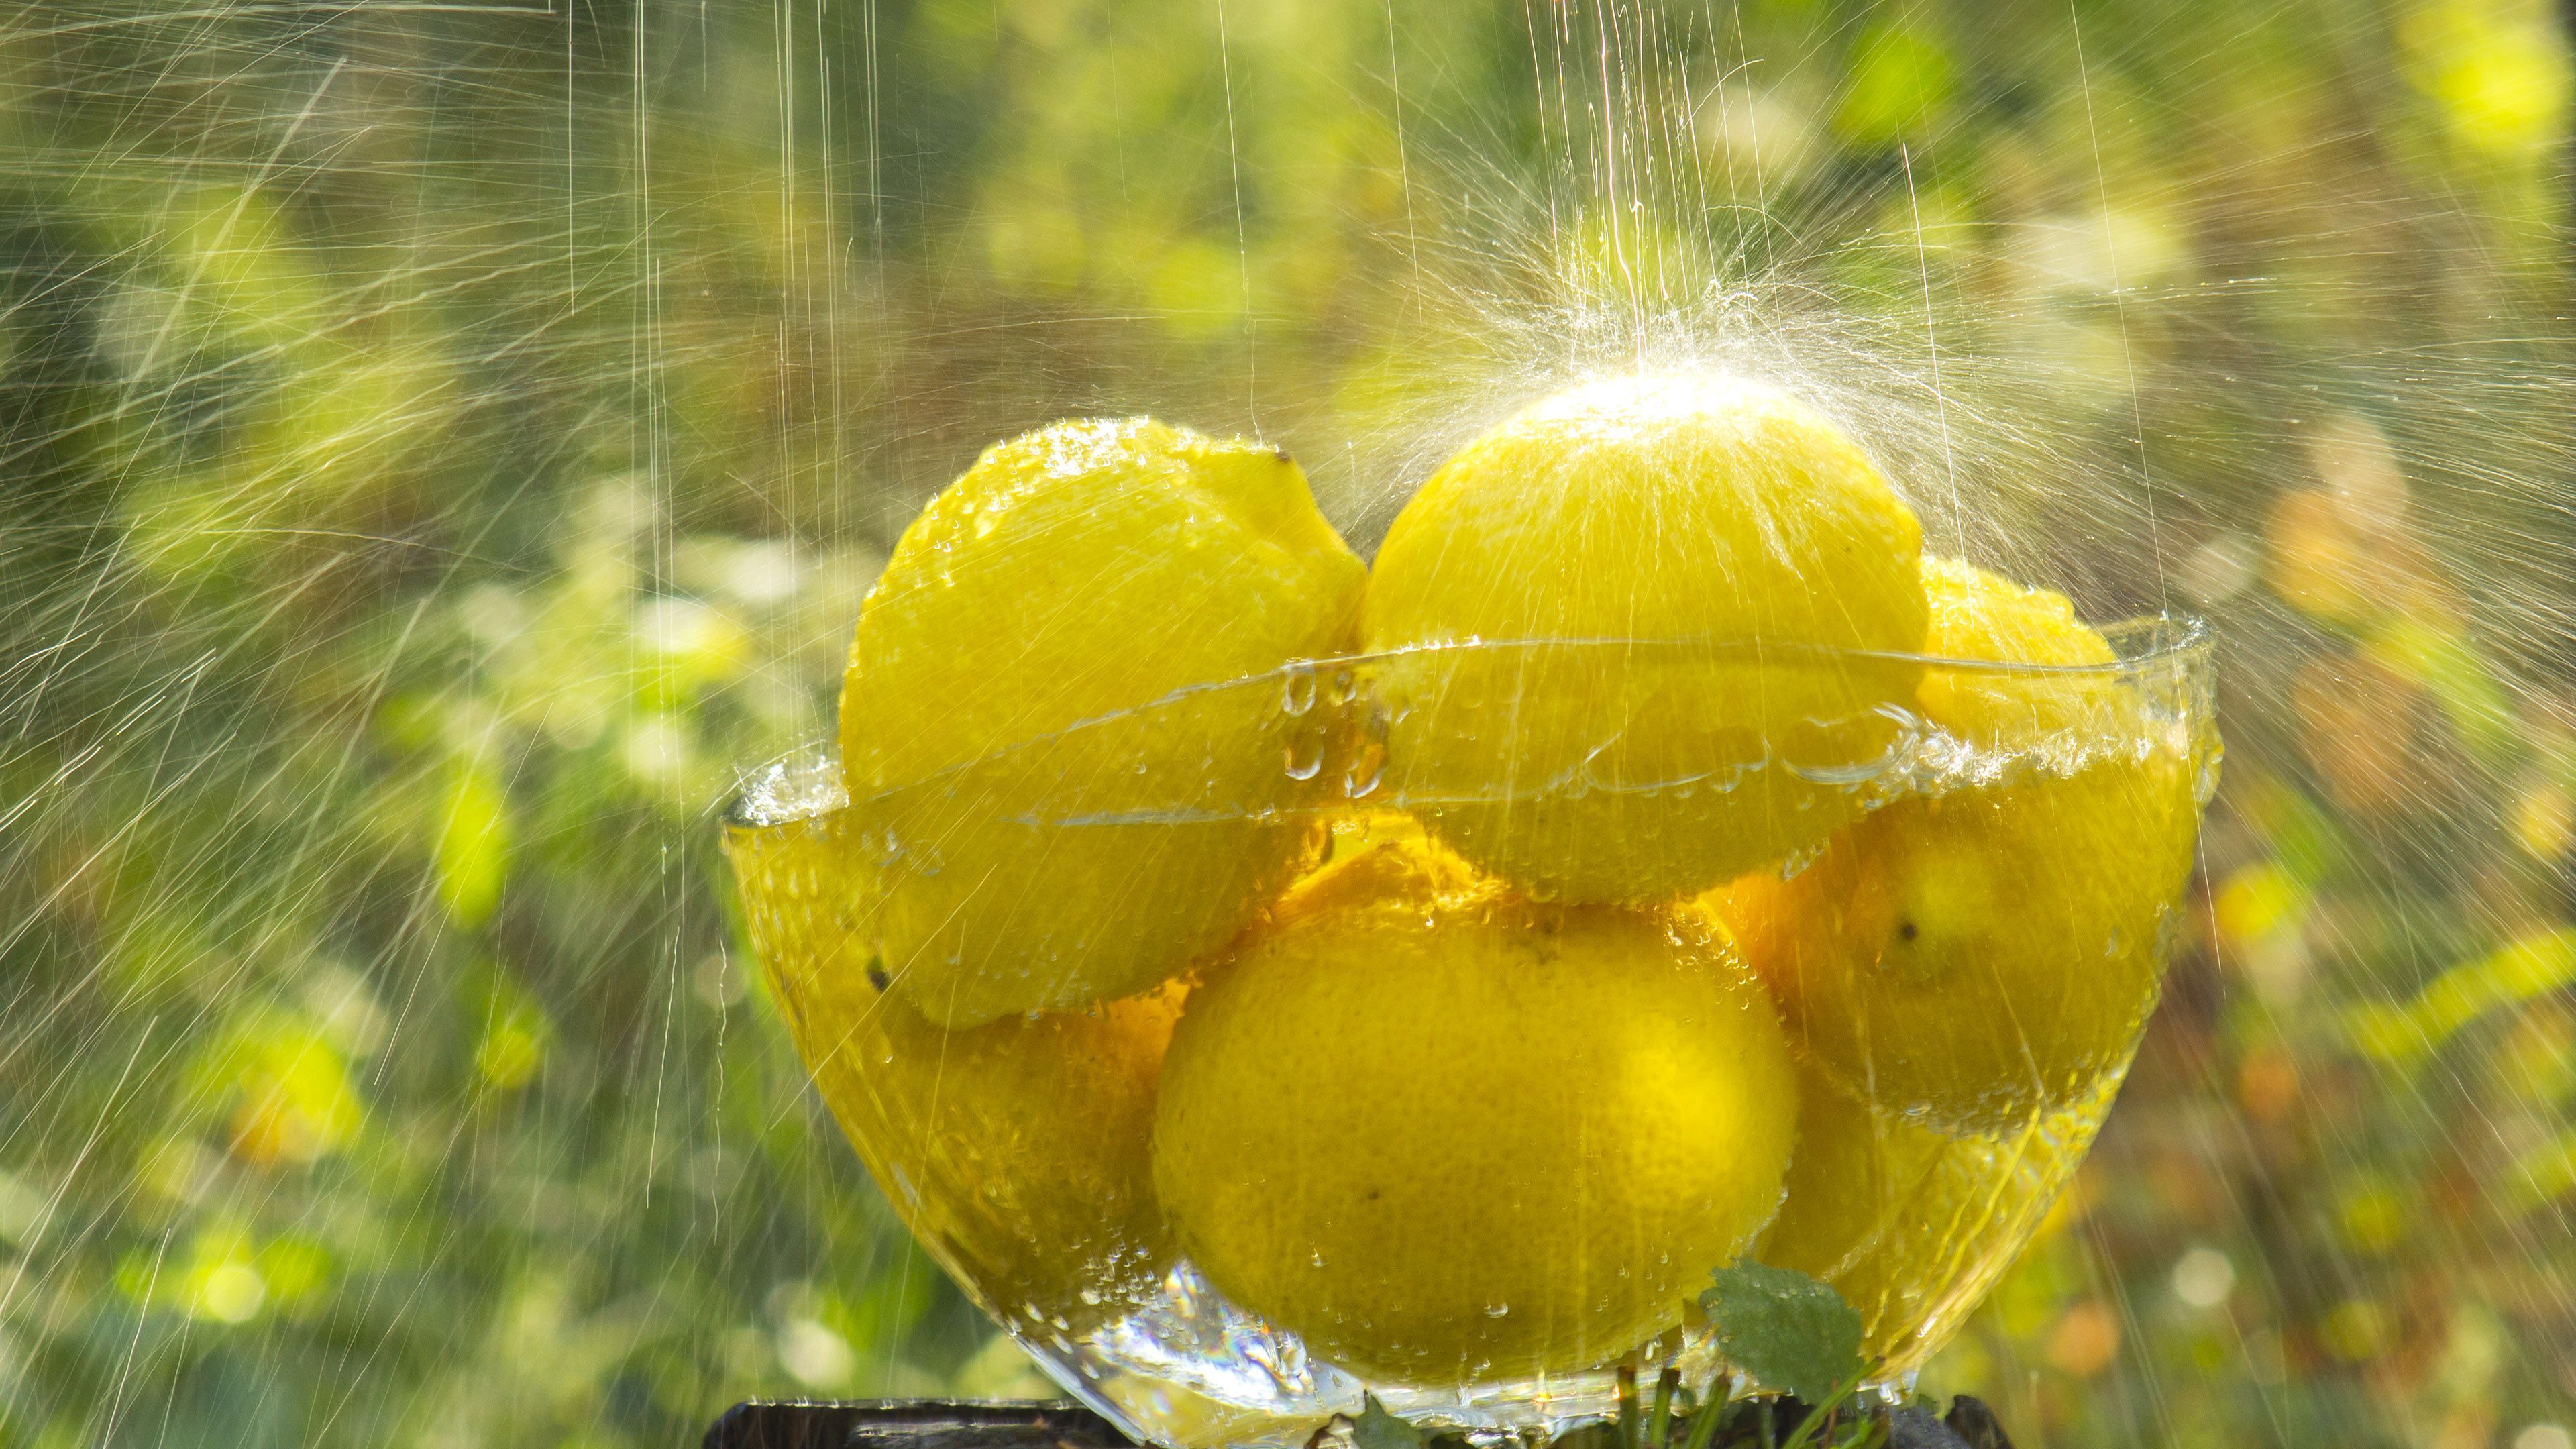 Raining on the lemons desktop wallpaper 28864